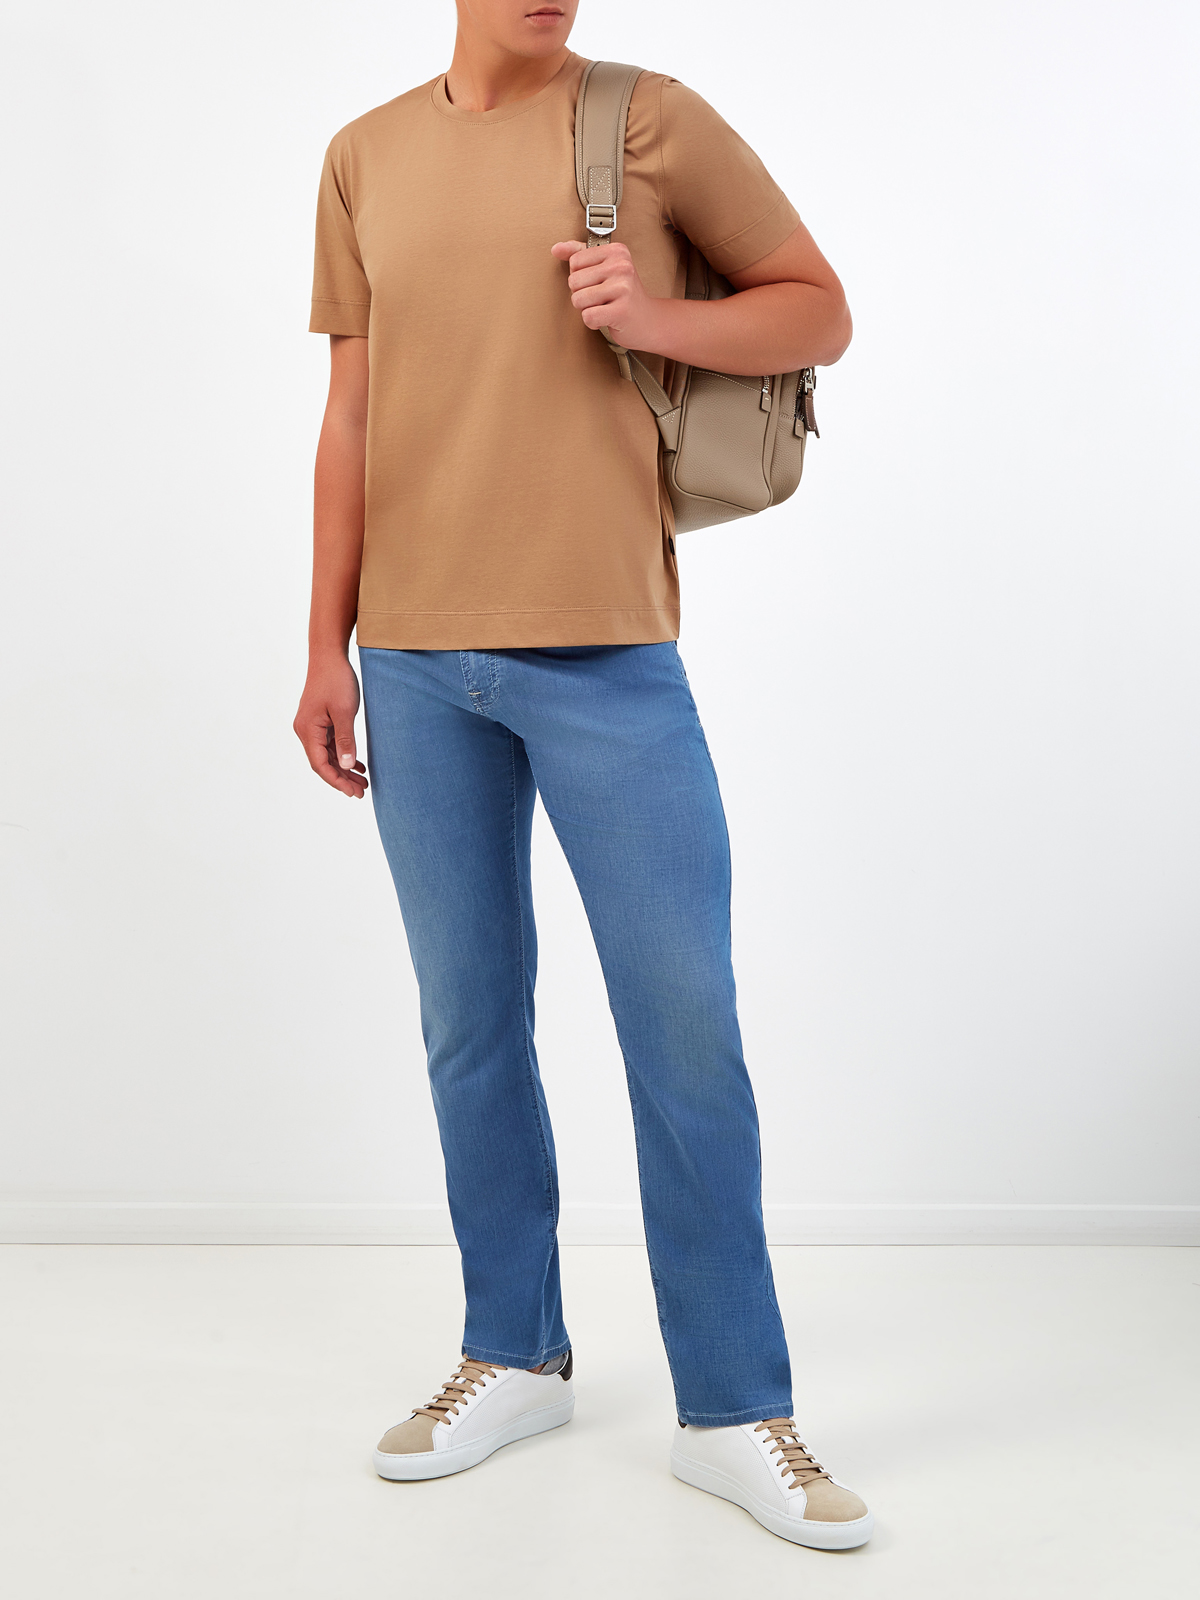 Хлопковая футболка с нашивкой и двойной прострочкой CUDGI, цвет коричневый, размер 50;52;54;56;48 - фото 2